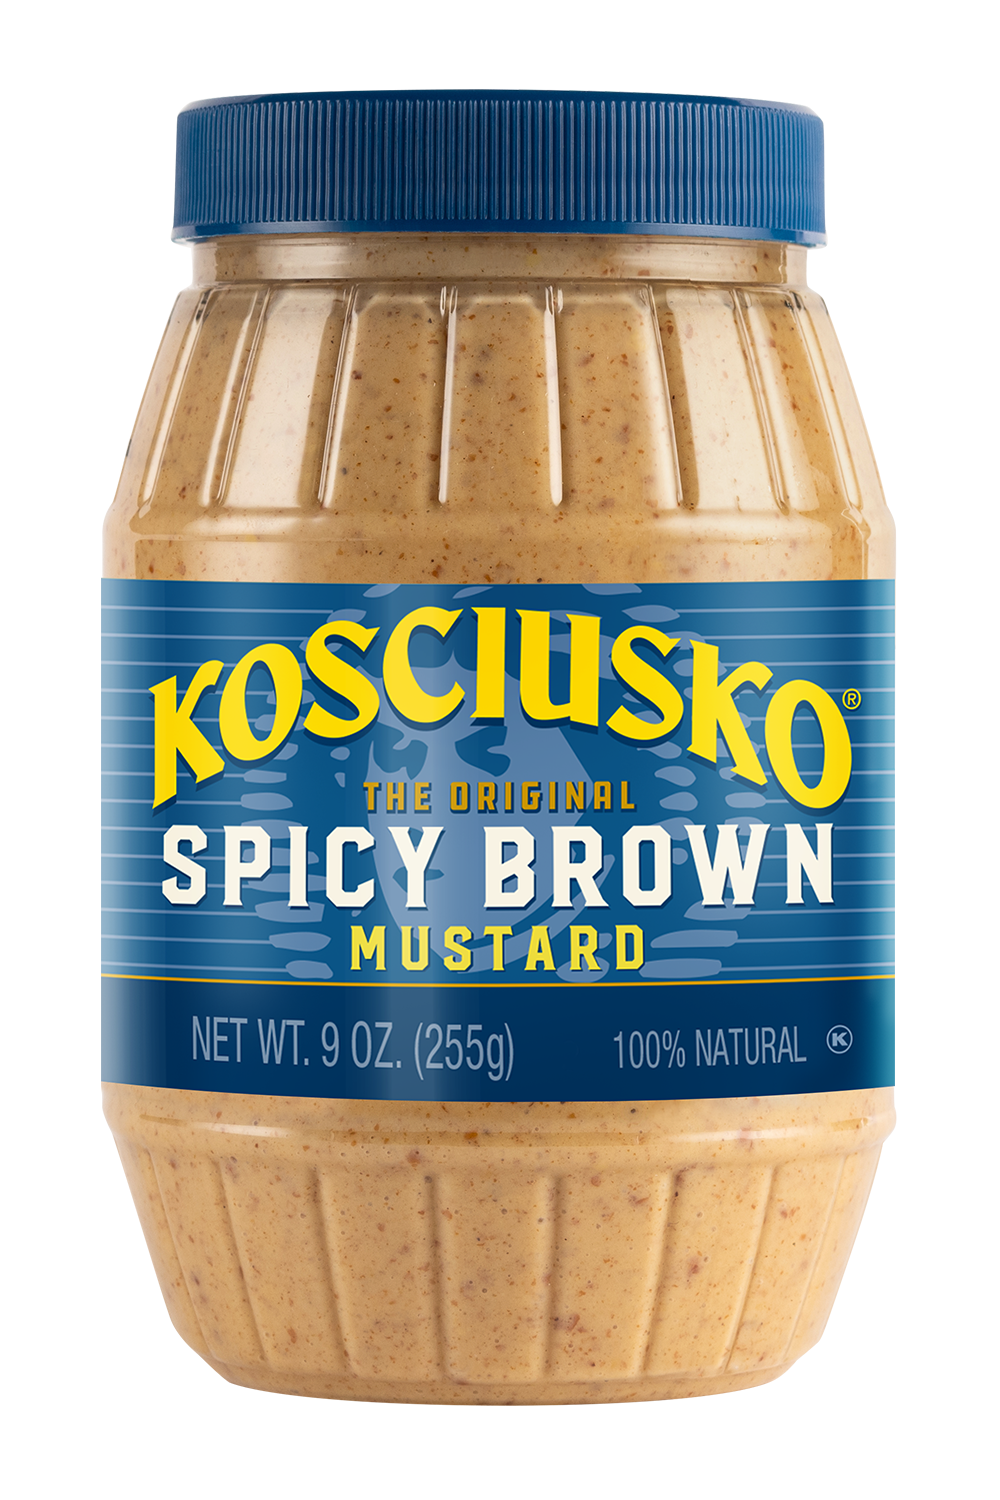 Kosciusko Spicy Brown Mustard bottle